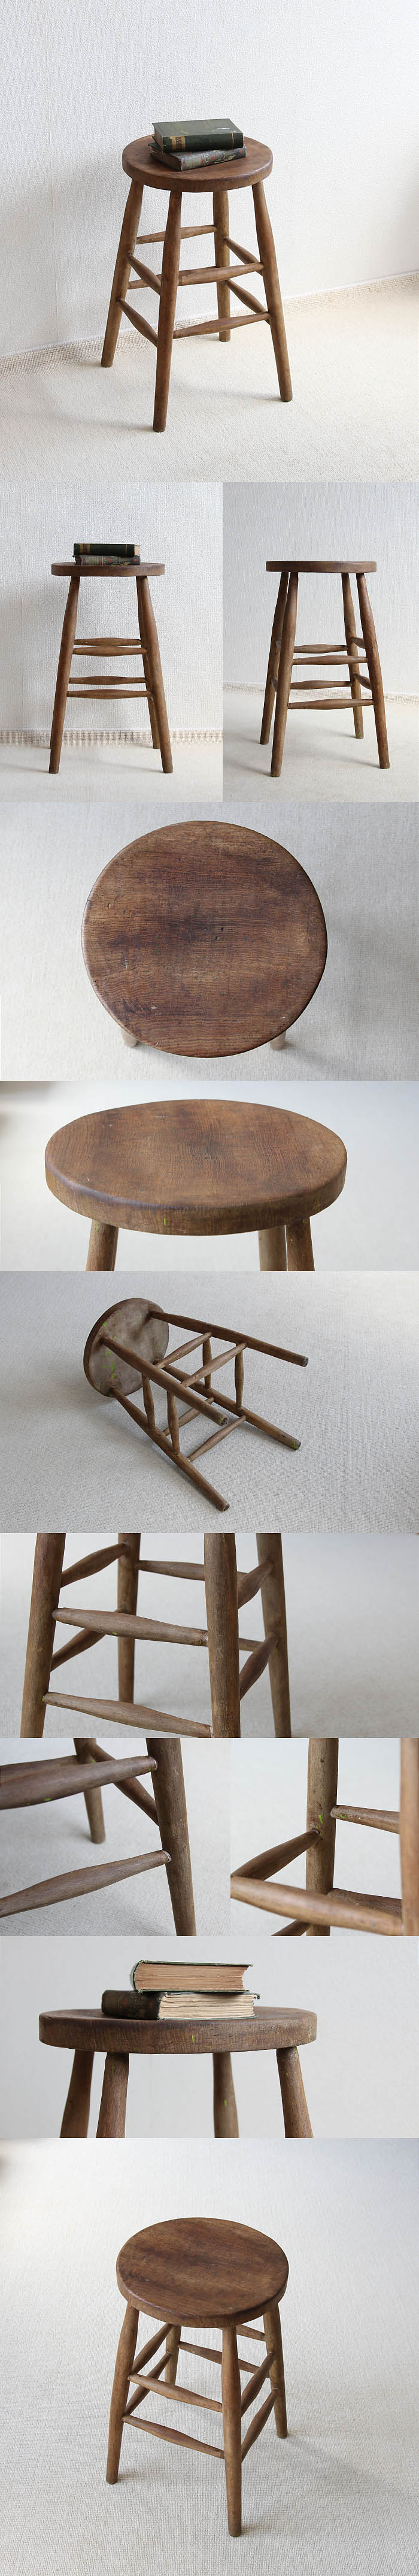 イギリス アンティーク ハイスツール 無垢材 一枚板座面 椅子 古木 木製 家具 V-302